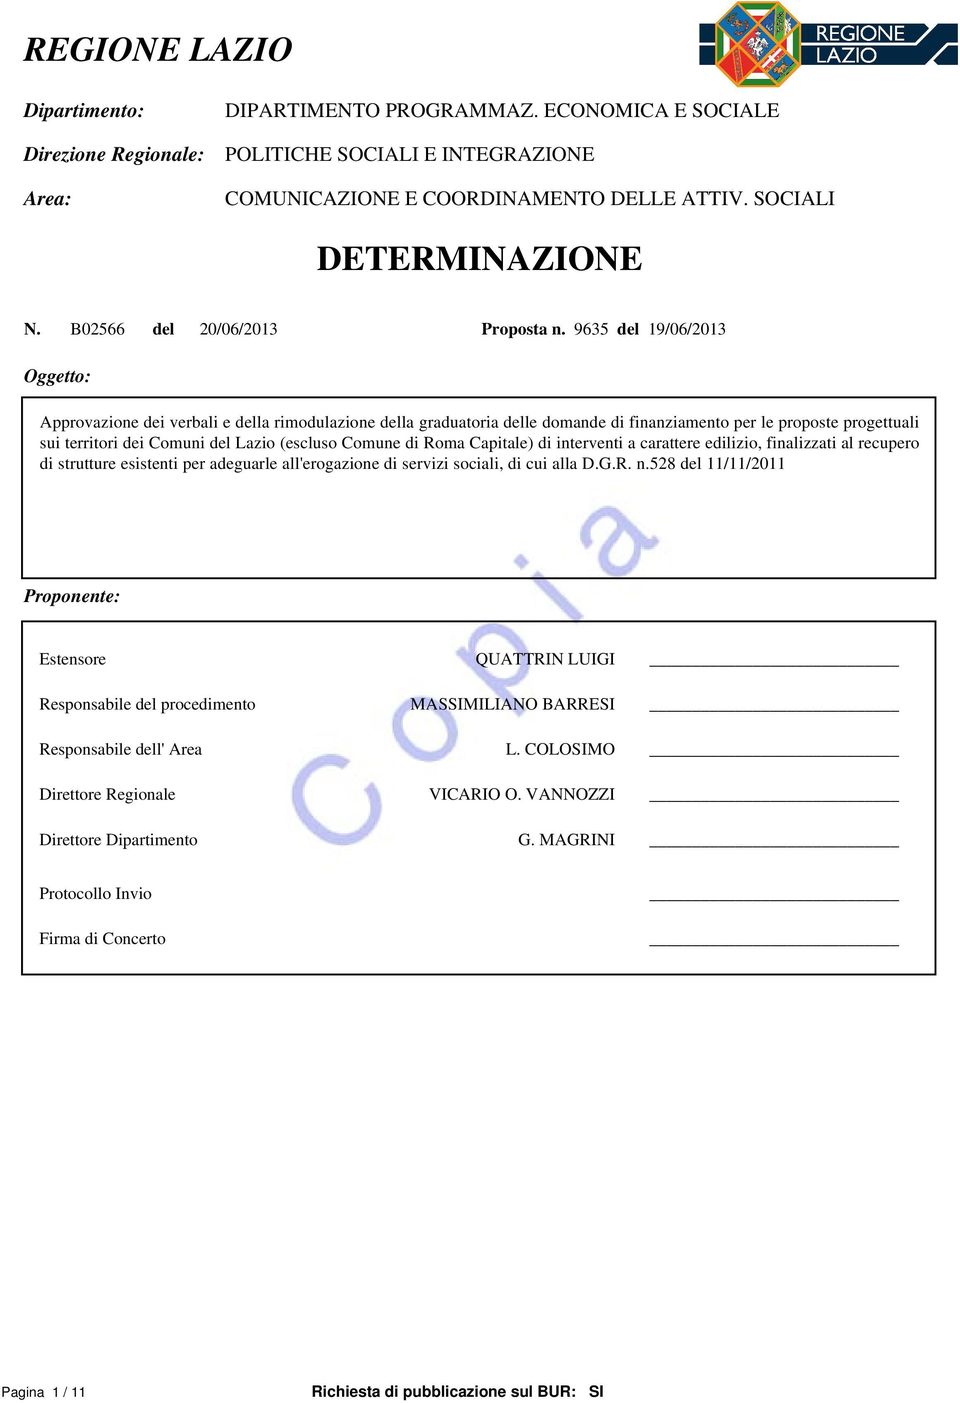 9635 del 19/06/2013 Oggetto: Approvazione dei verbali e della rimodulazione della graduatoria delle domande di finanziamento per le proposte progettuali sui territori dei Comuni del Lazio (escluso